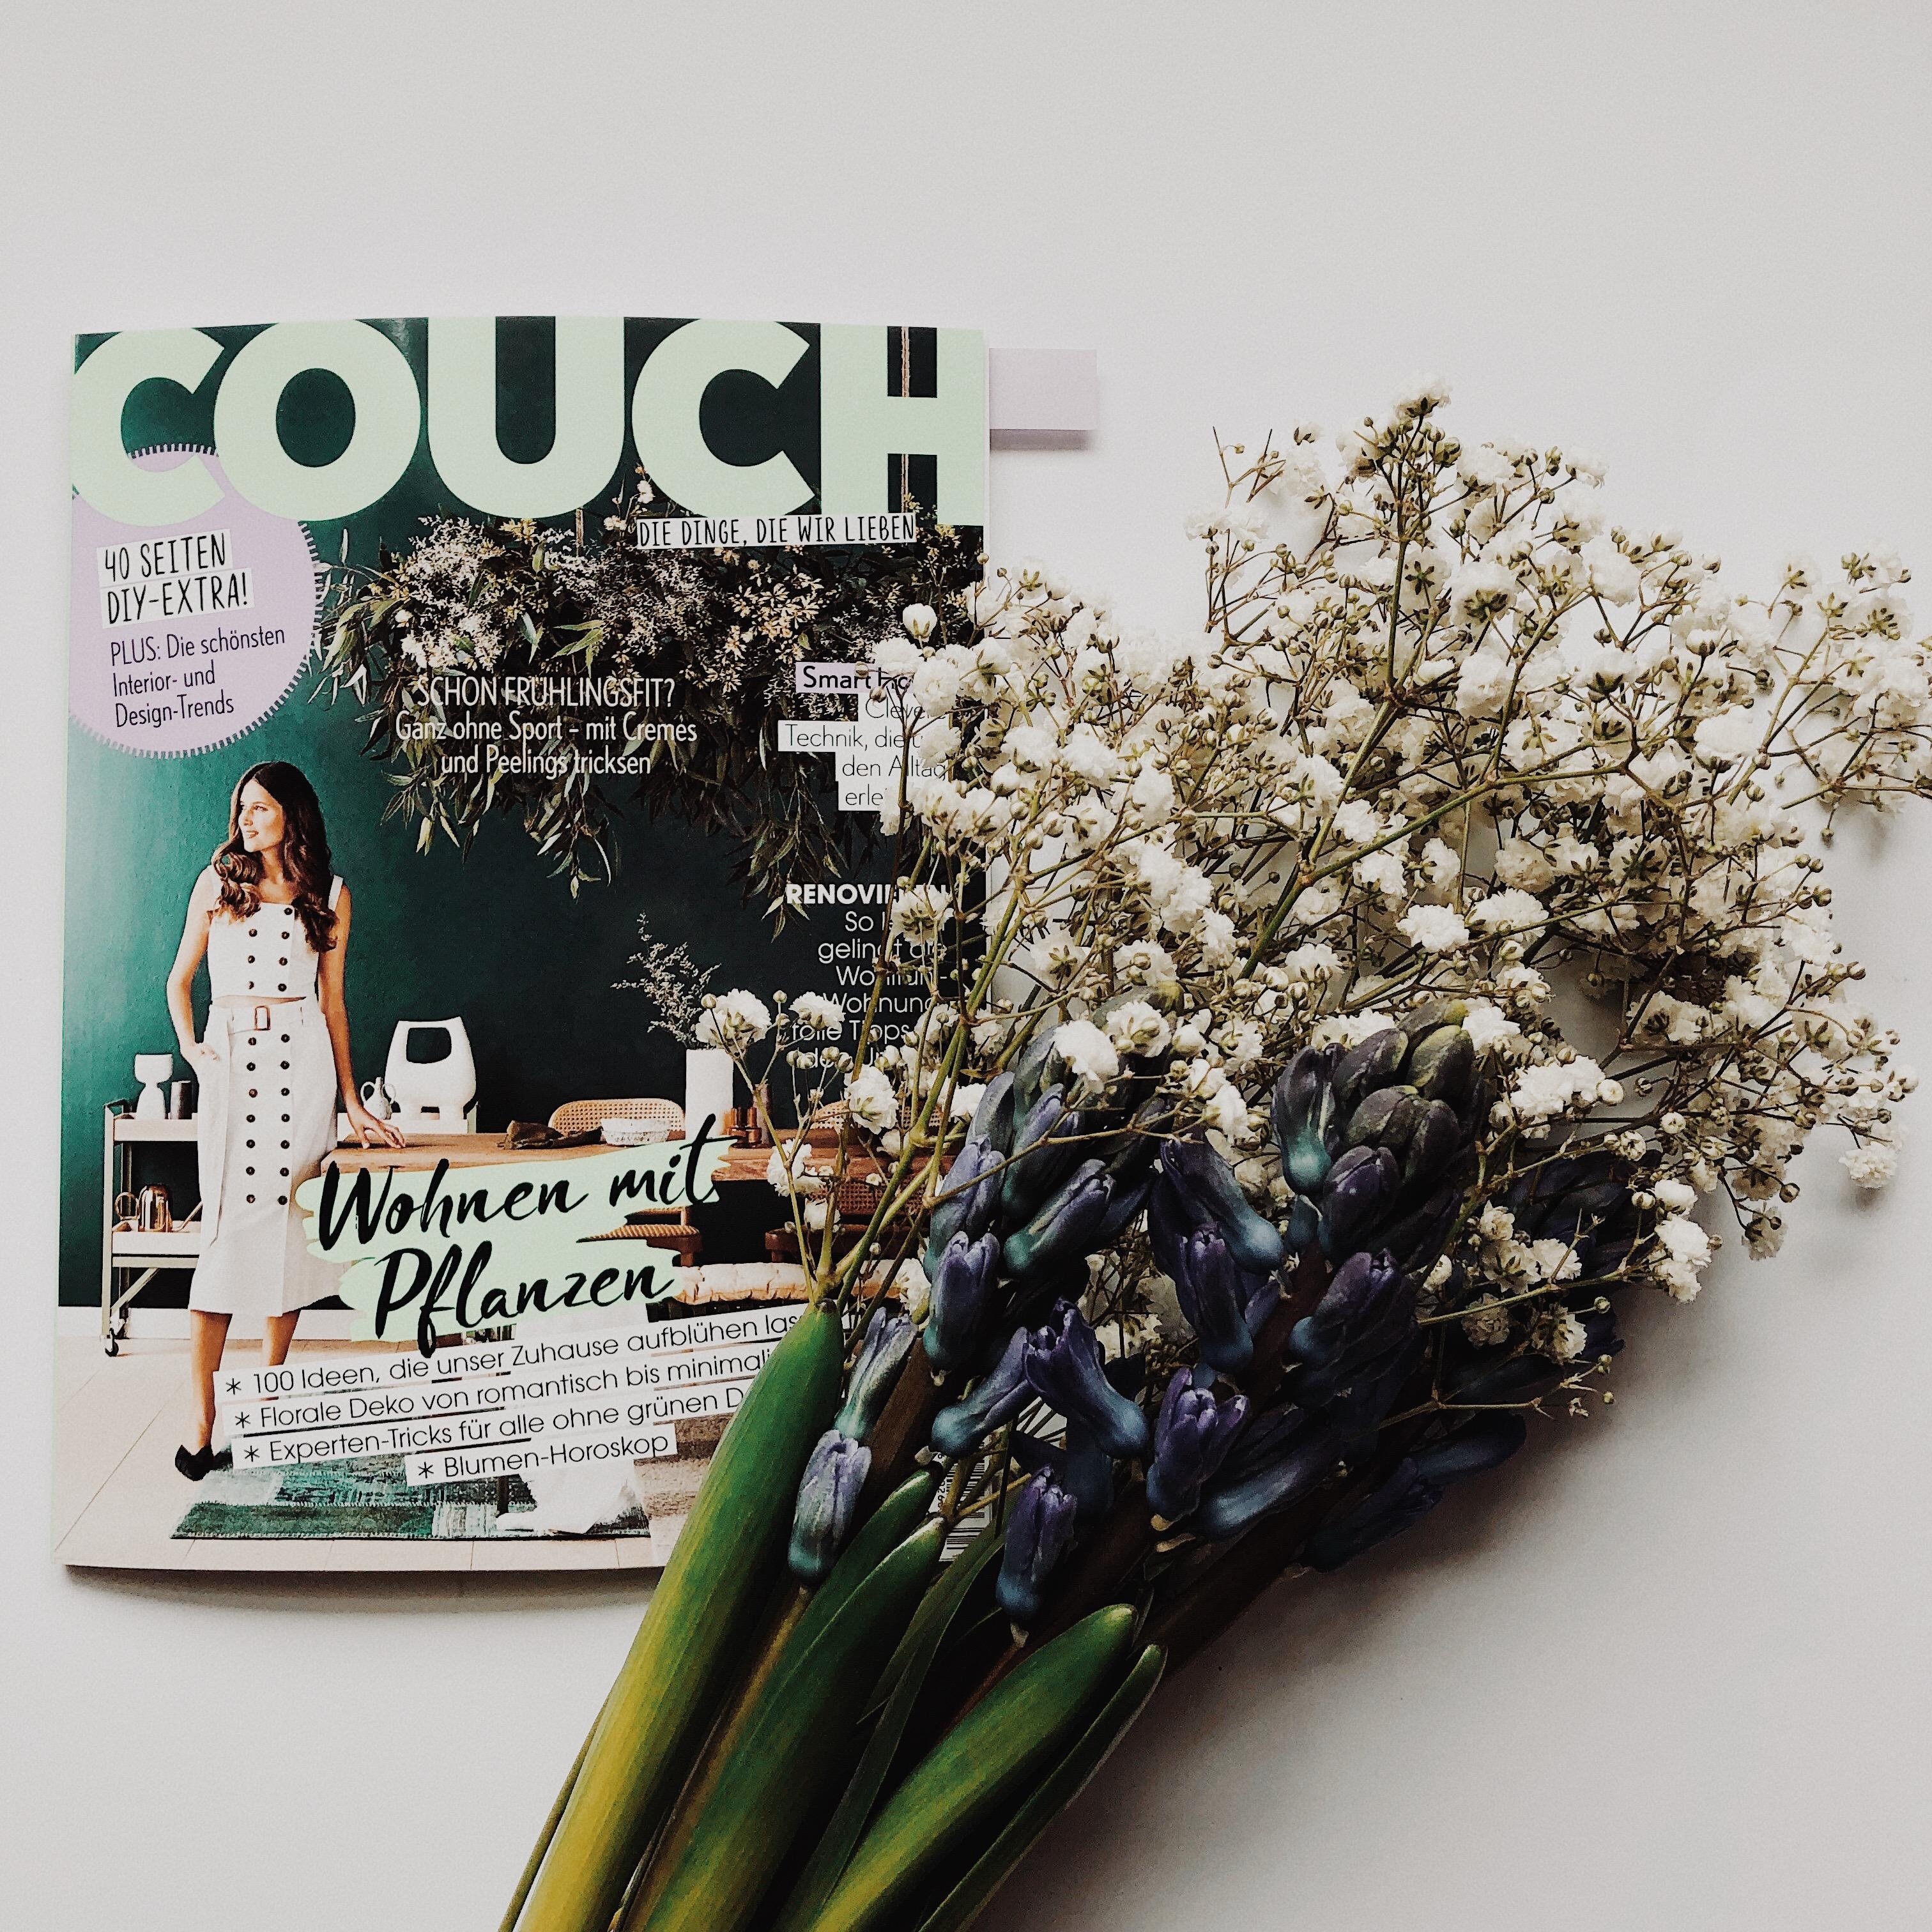 Mein Bild zum Lieblingsthema #flowerlove ist dabei. #freude #couchstyle #couchmagazin #springflowers #freshflowers